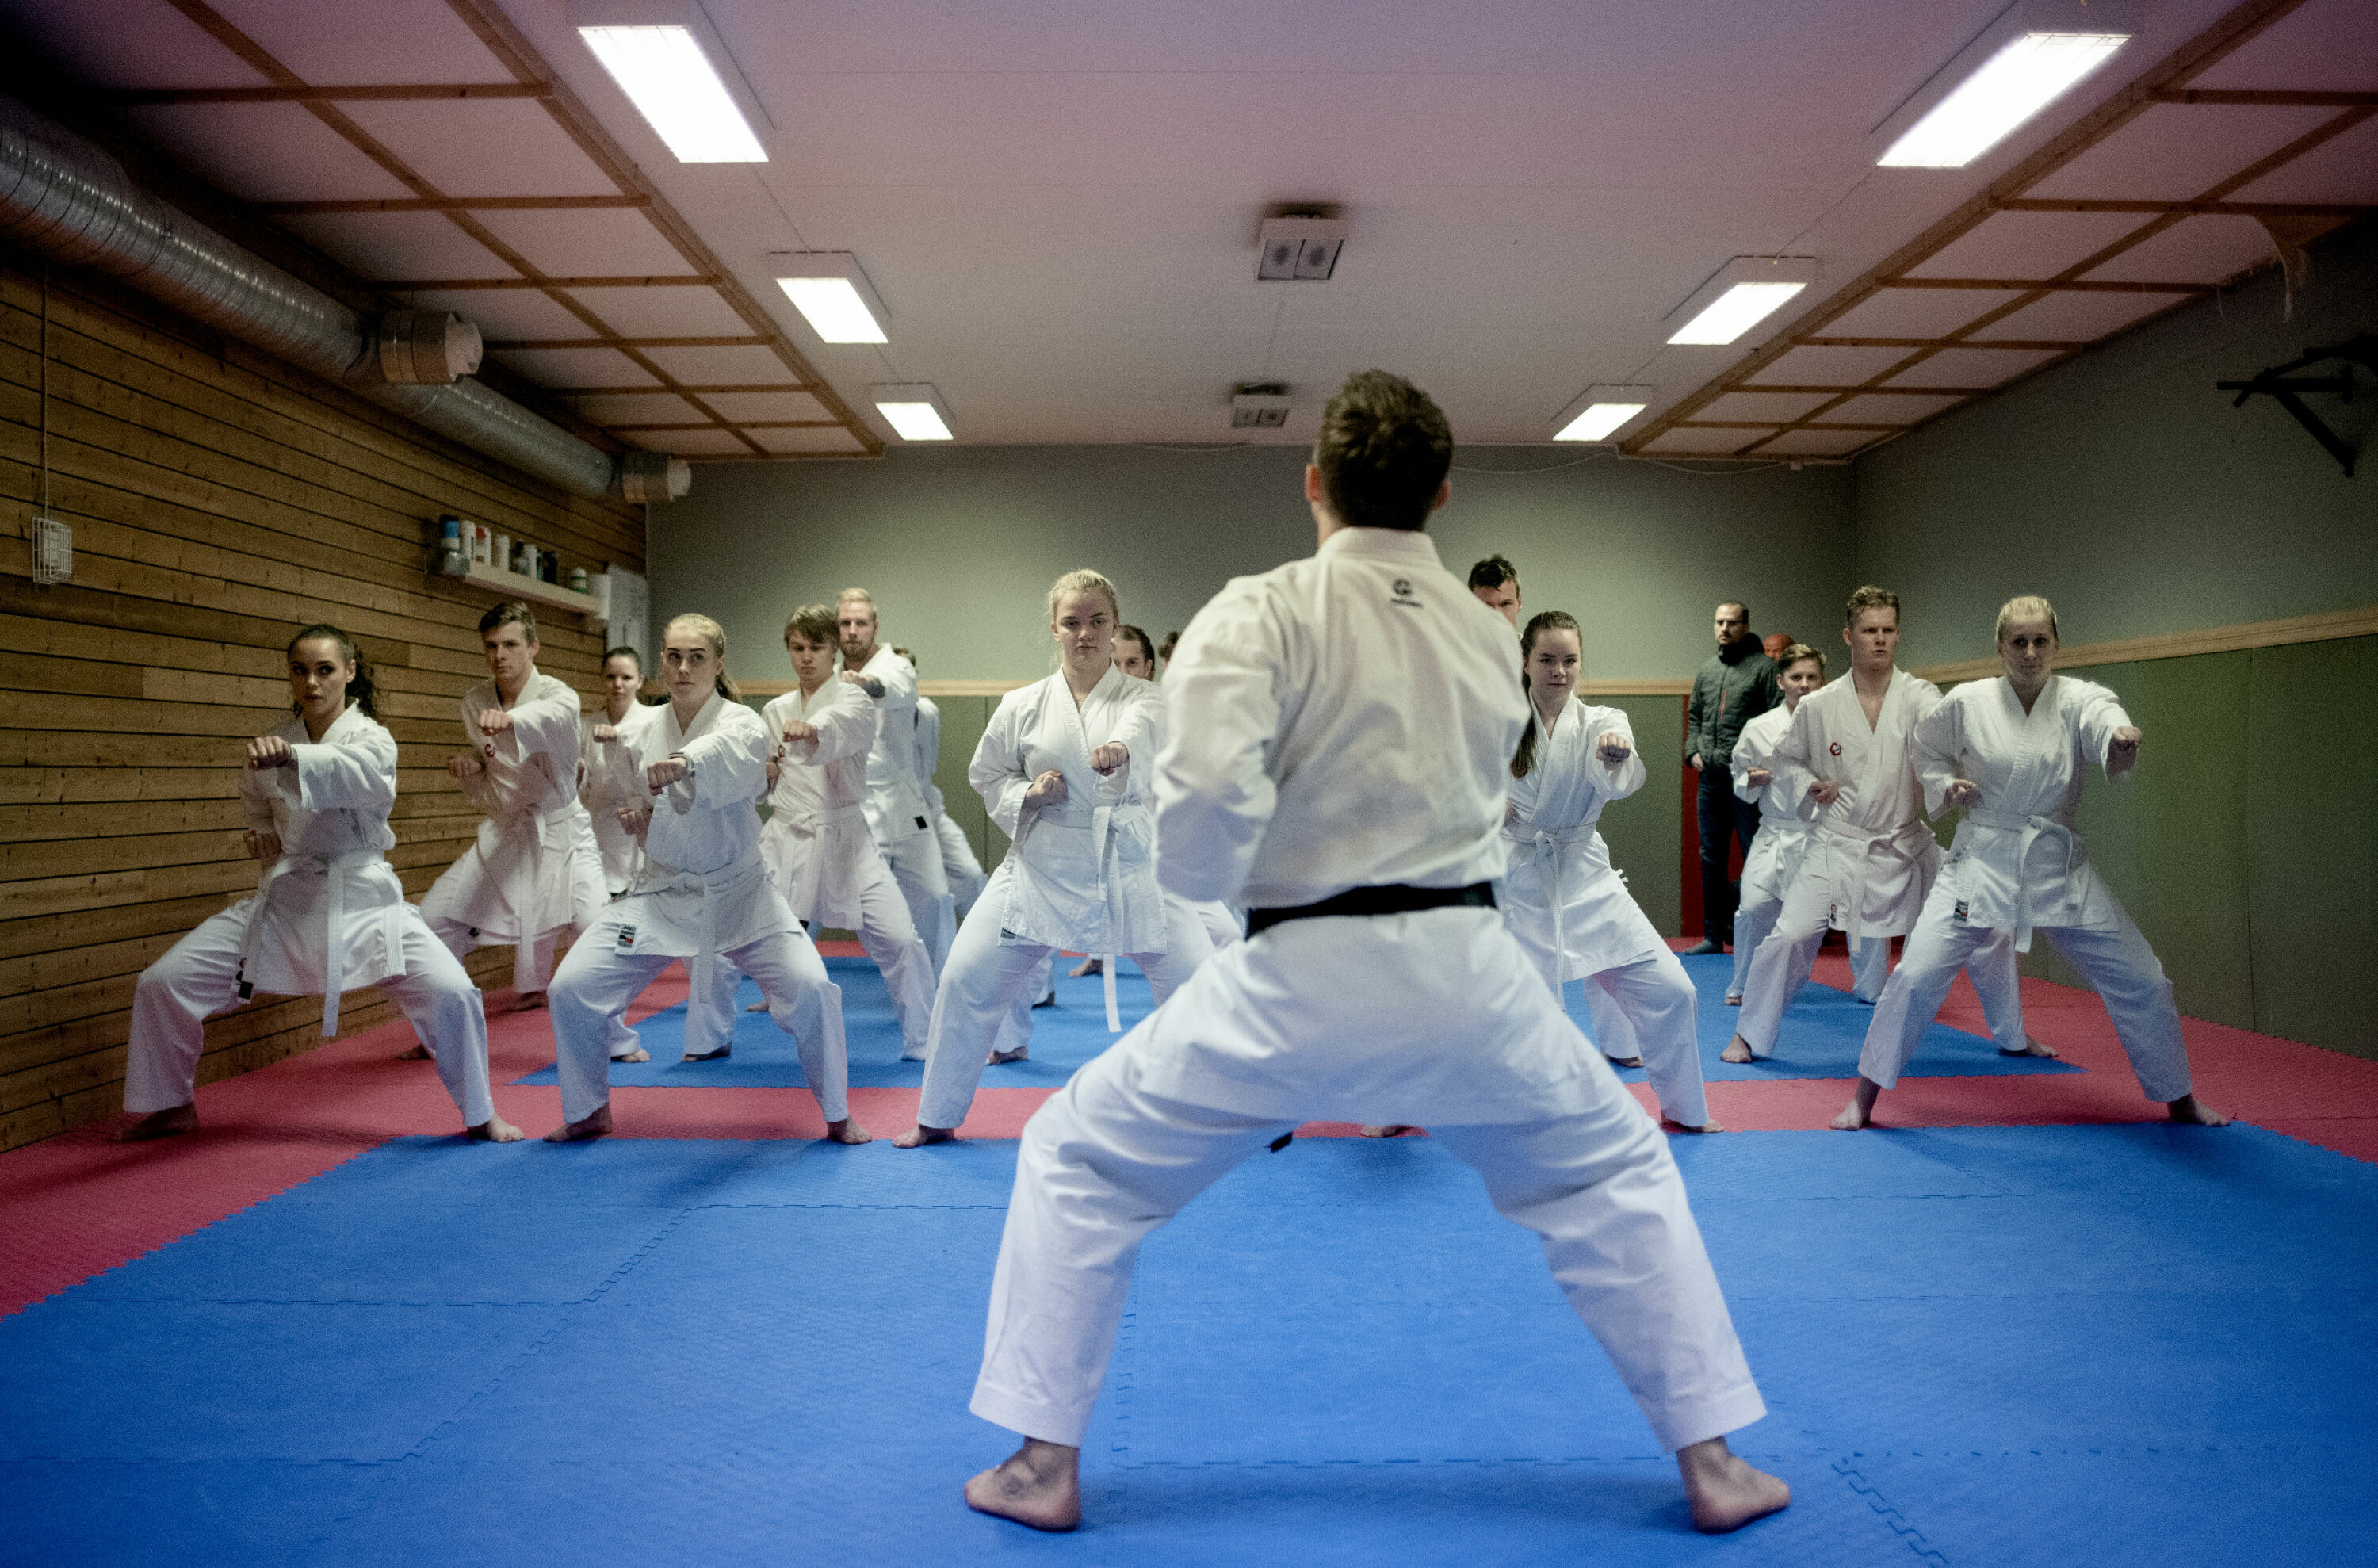 Førsteårs- og bahcelorstudentar i idrettsvitskap har karatetime saman. På studiet blir det lagt stor vekt på kople teori med utøvande idrett i mange ulike former. Foto: Marthe A. Vannebo